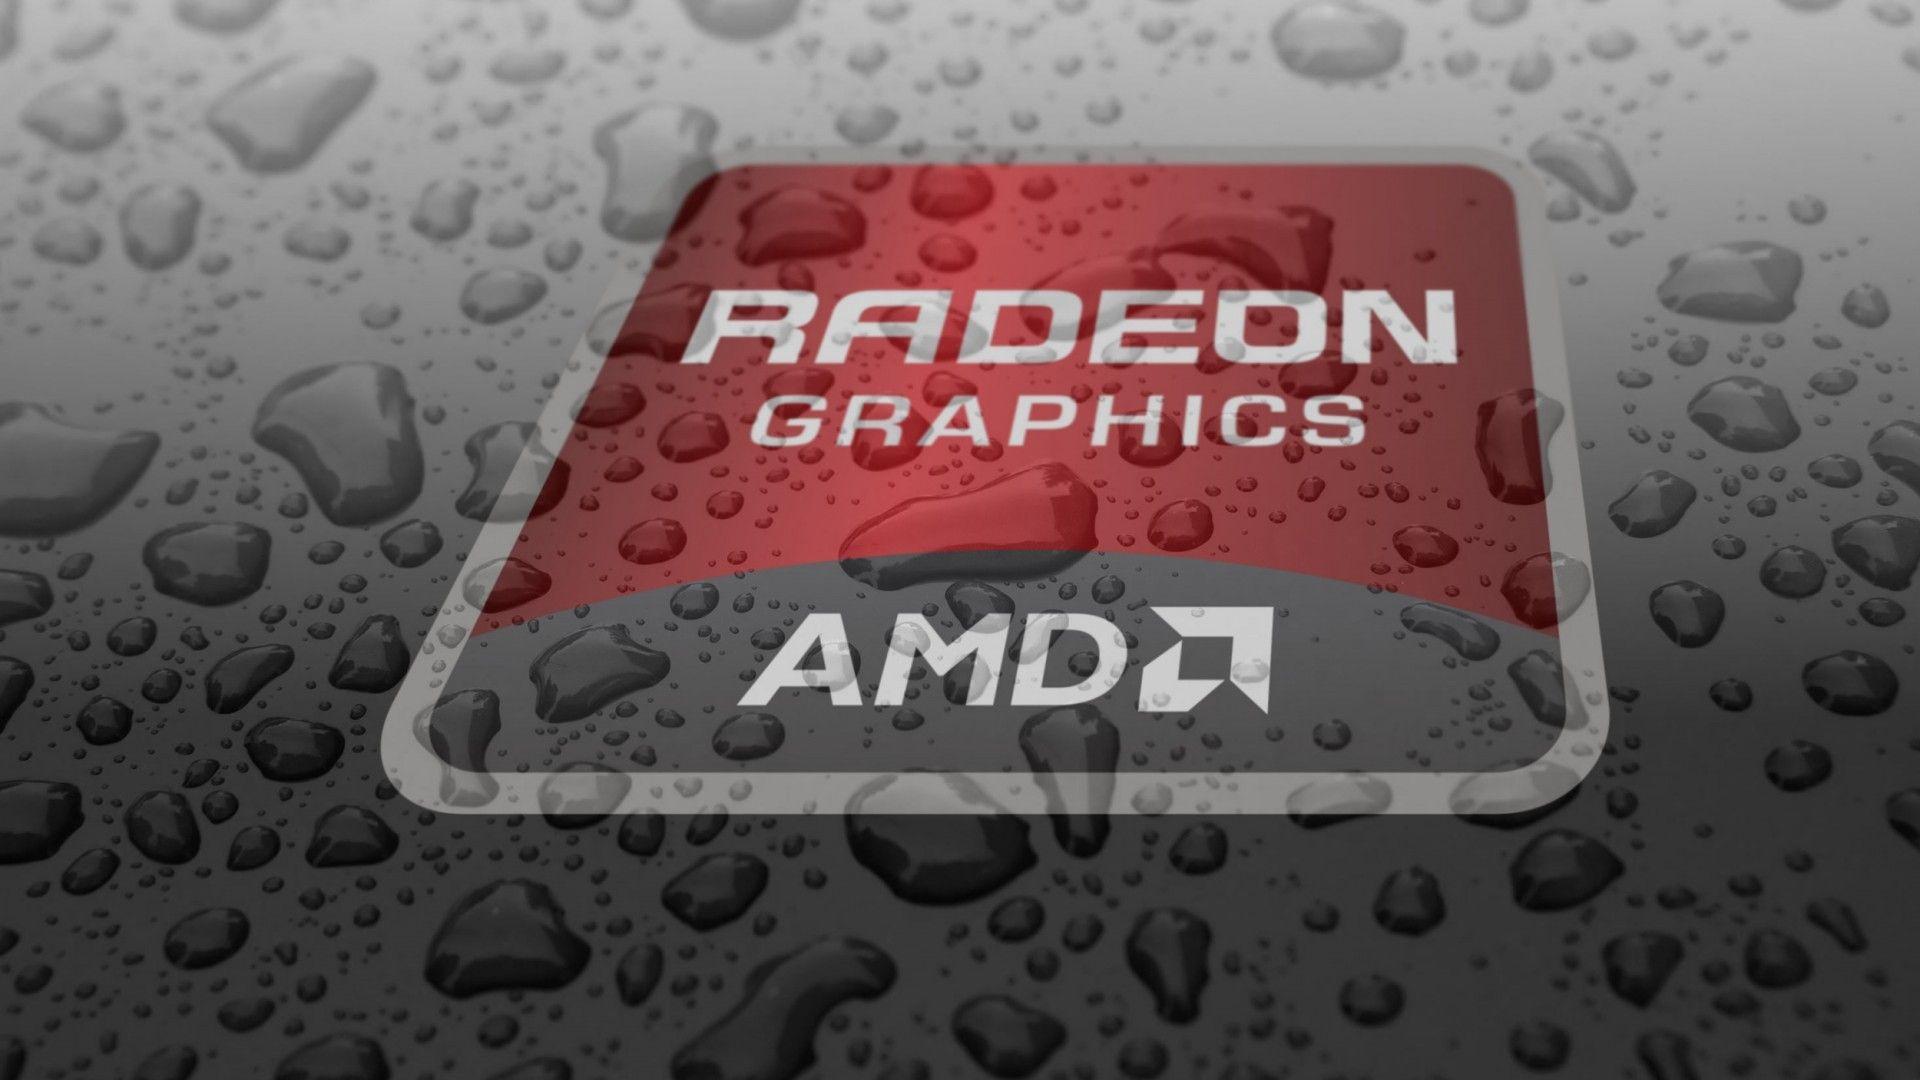 AMD Radeon Wallpaper. High Definition Wallpaper HD Wallpaper